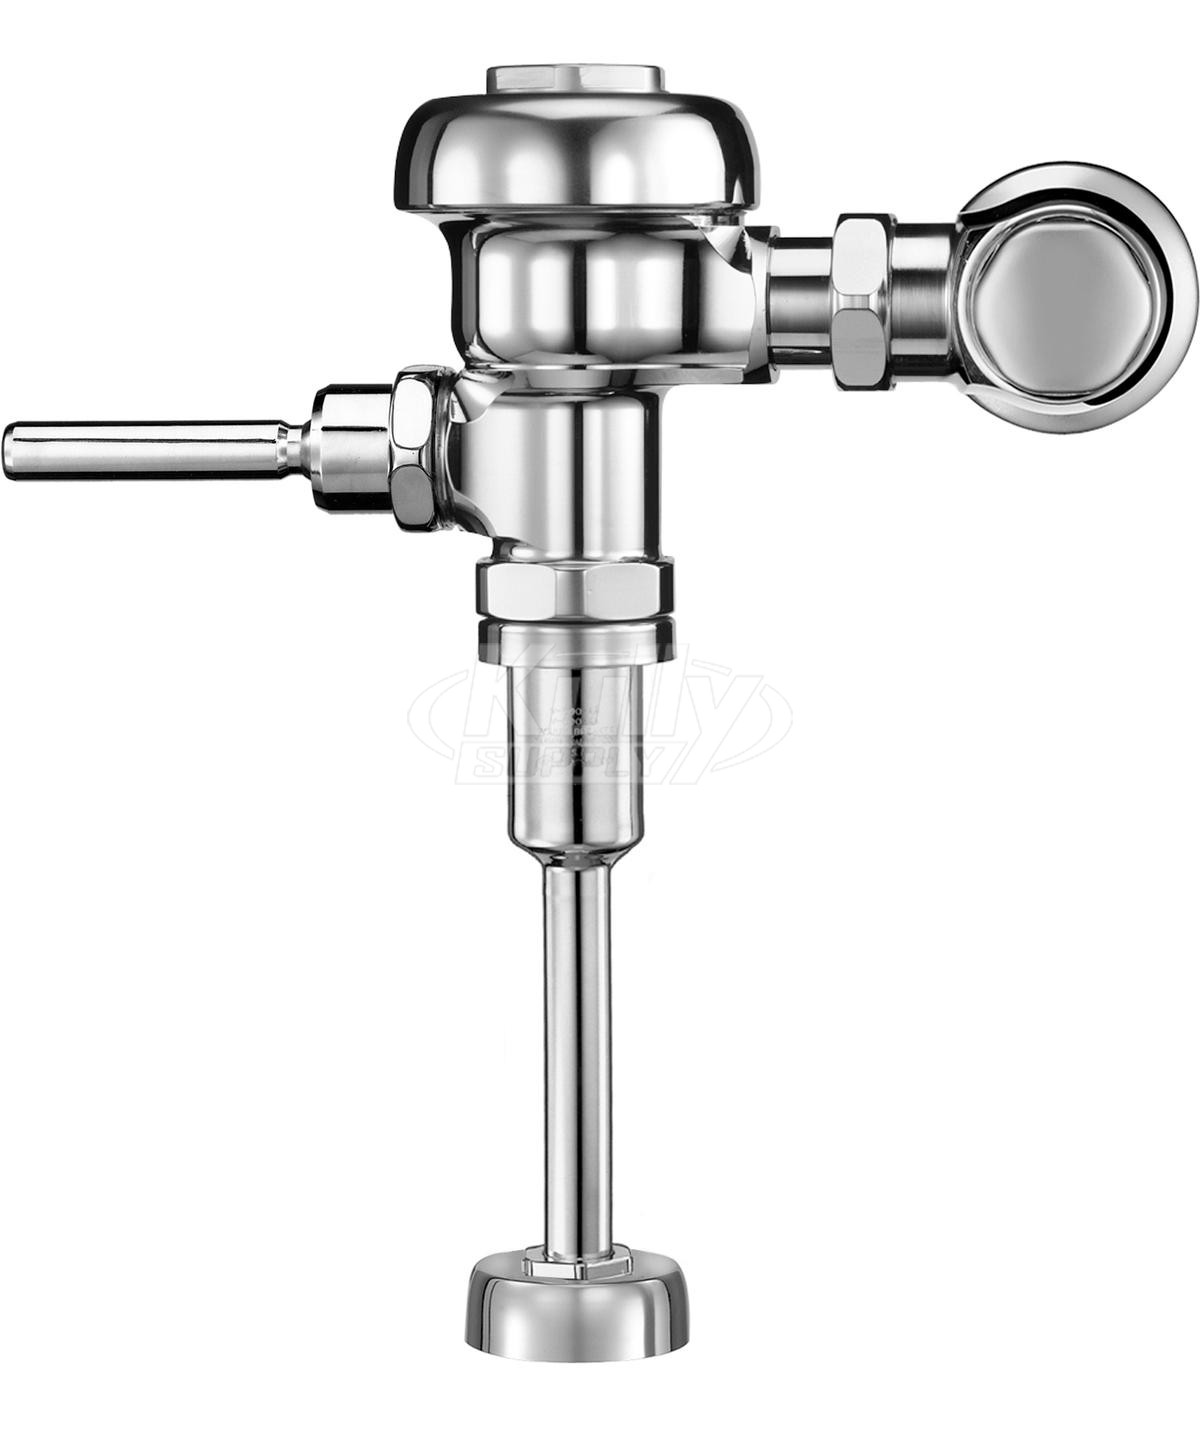 Sloan 180-1.5 Urinal 1.5 GPF Flushometer